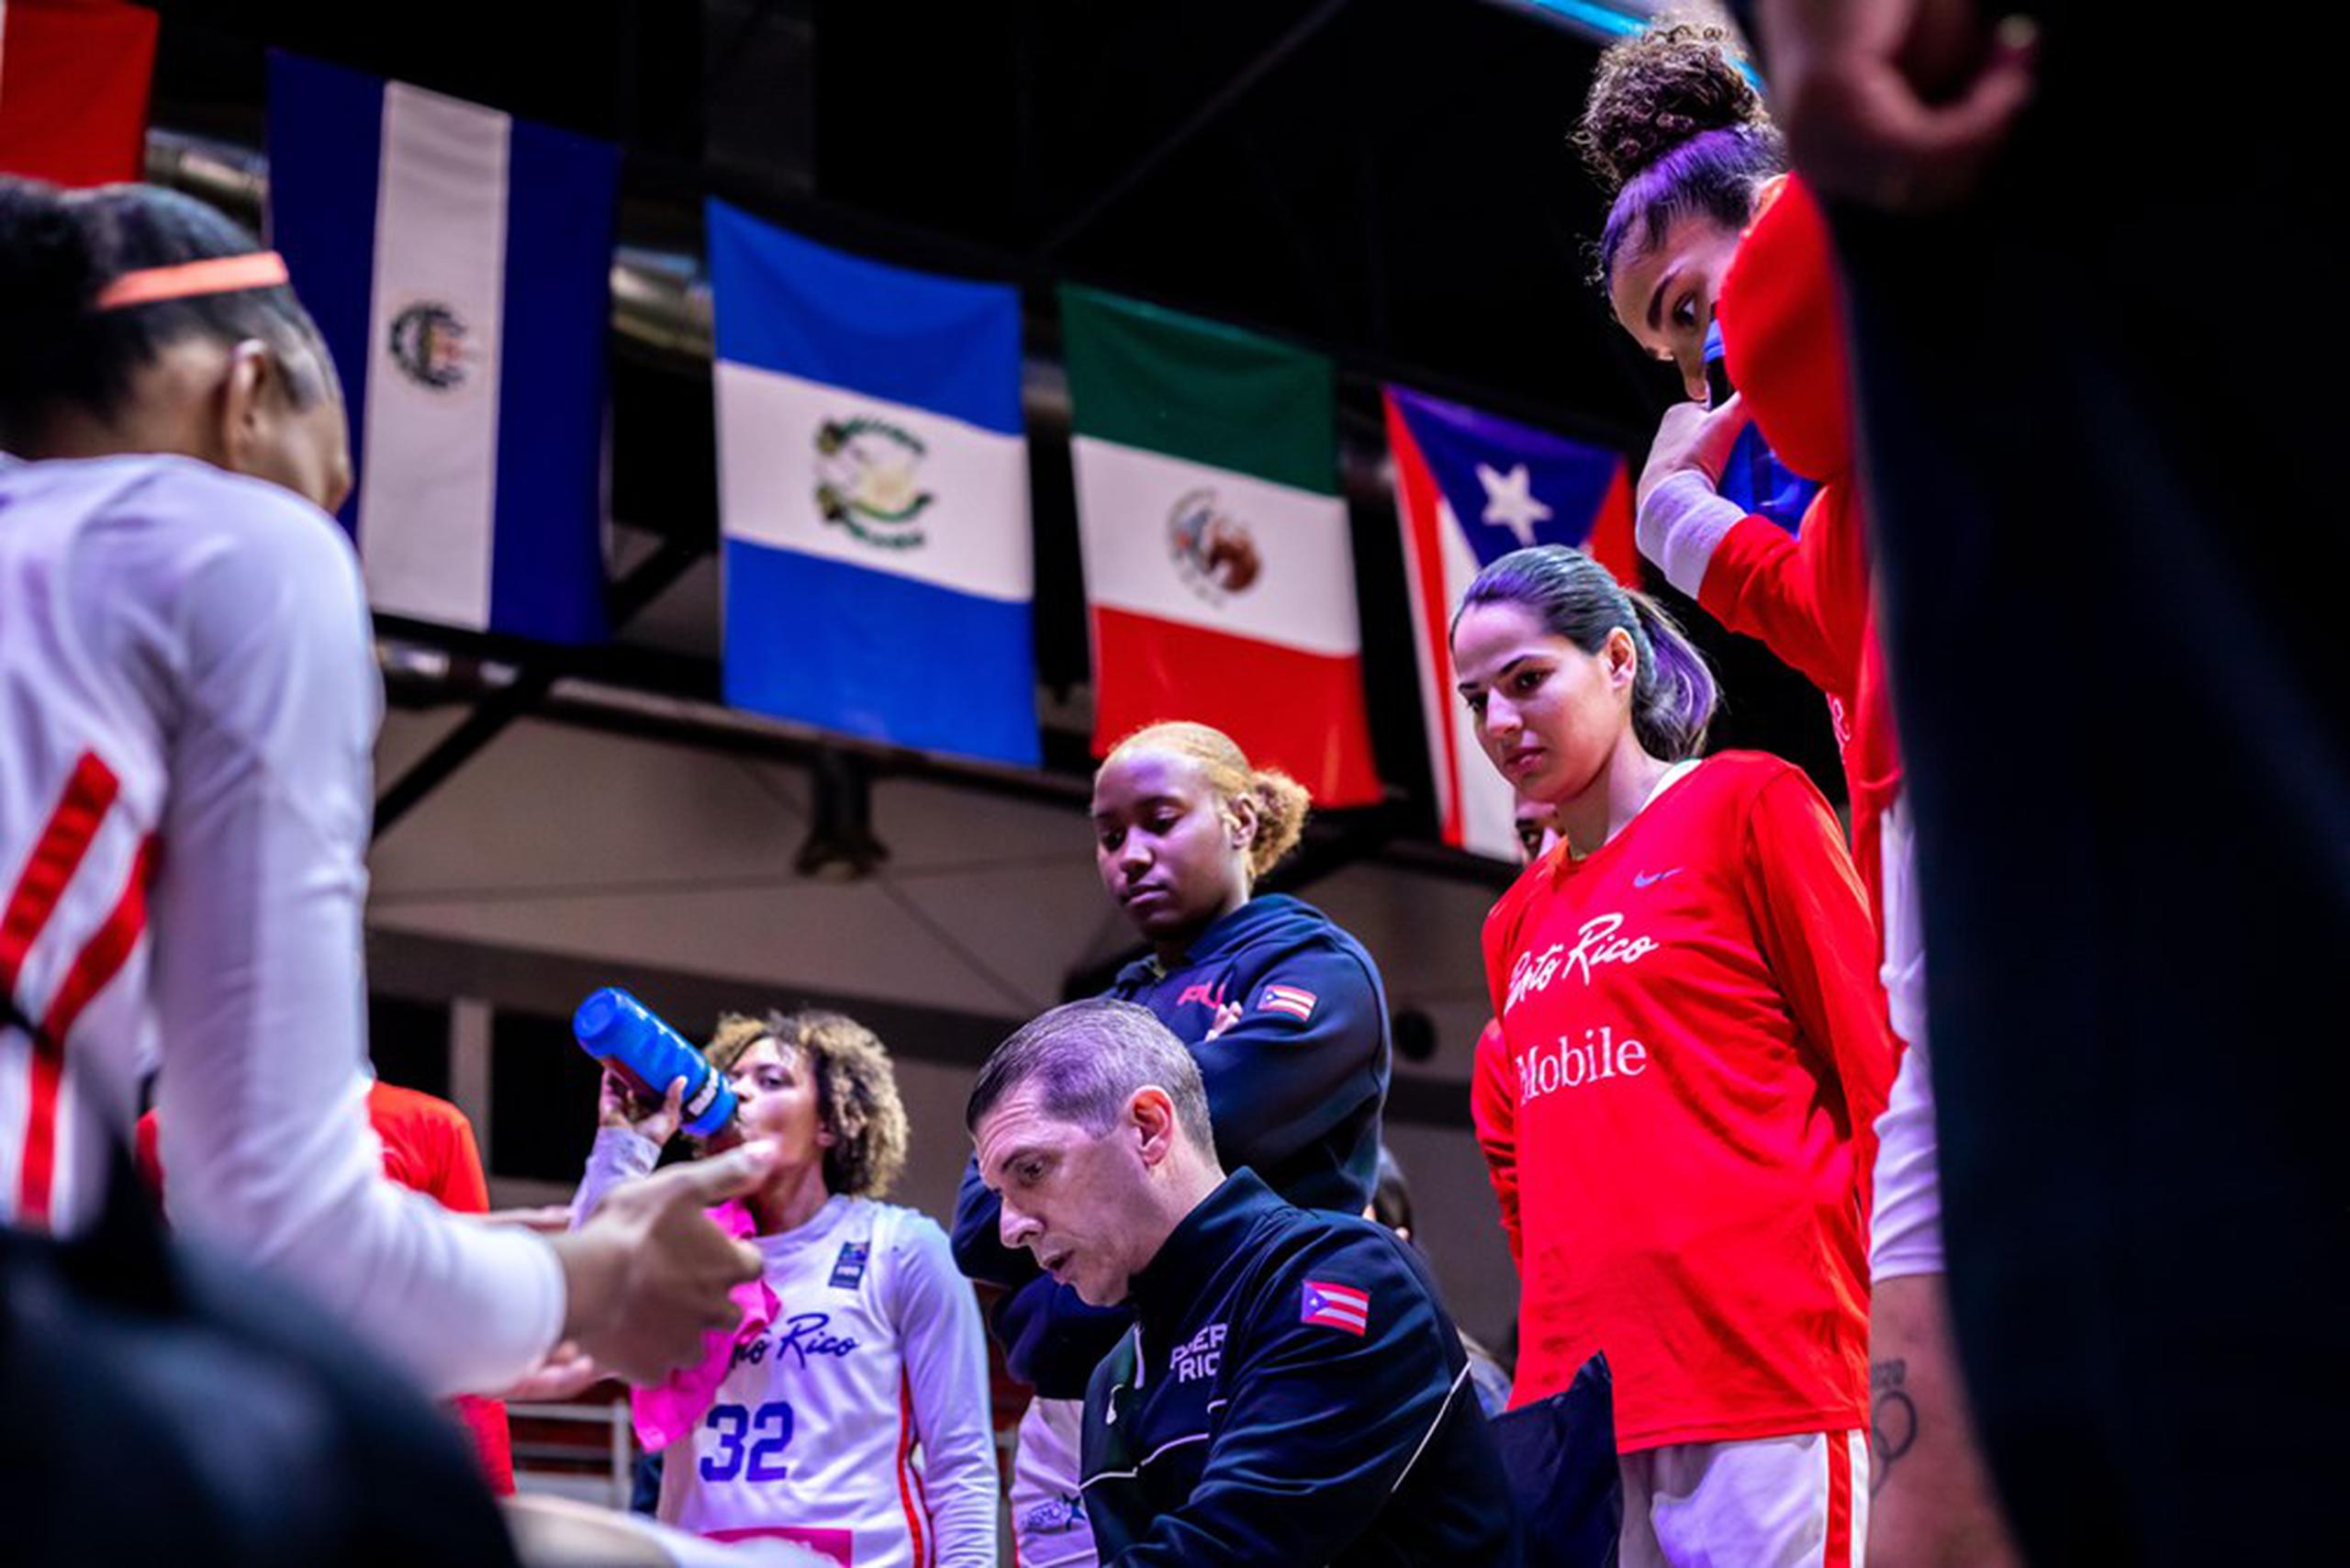 El Equipo Nacional Femenino de baloncesto dominó a las cubanas de principio a fin el sábado para adelantar a la final.